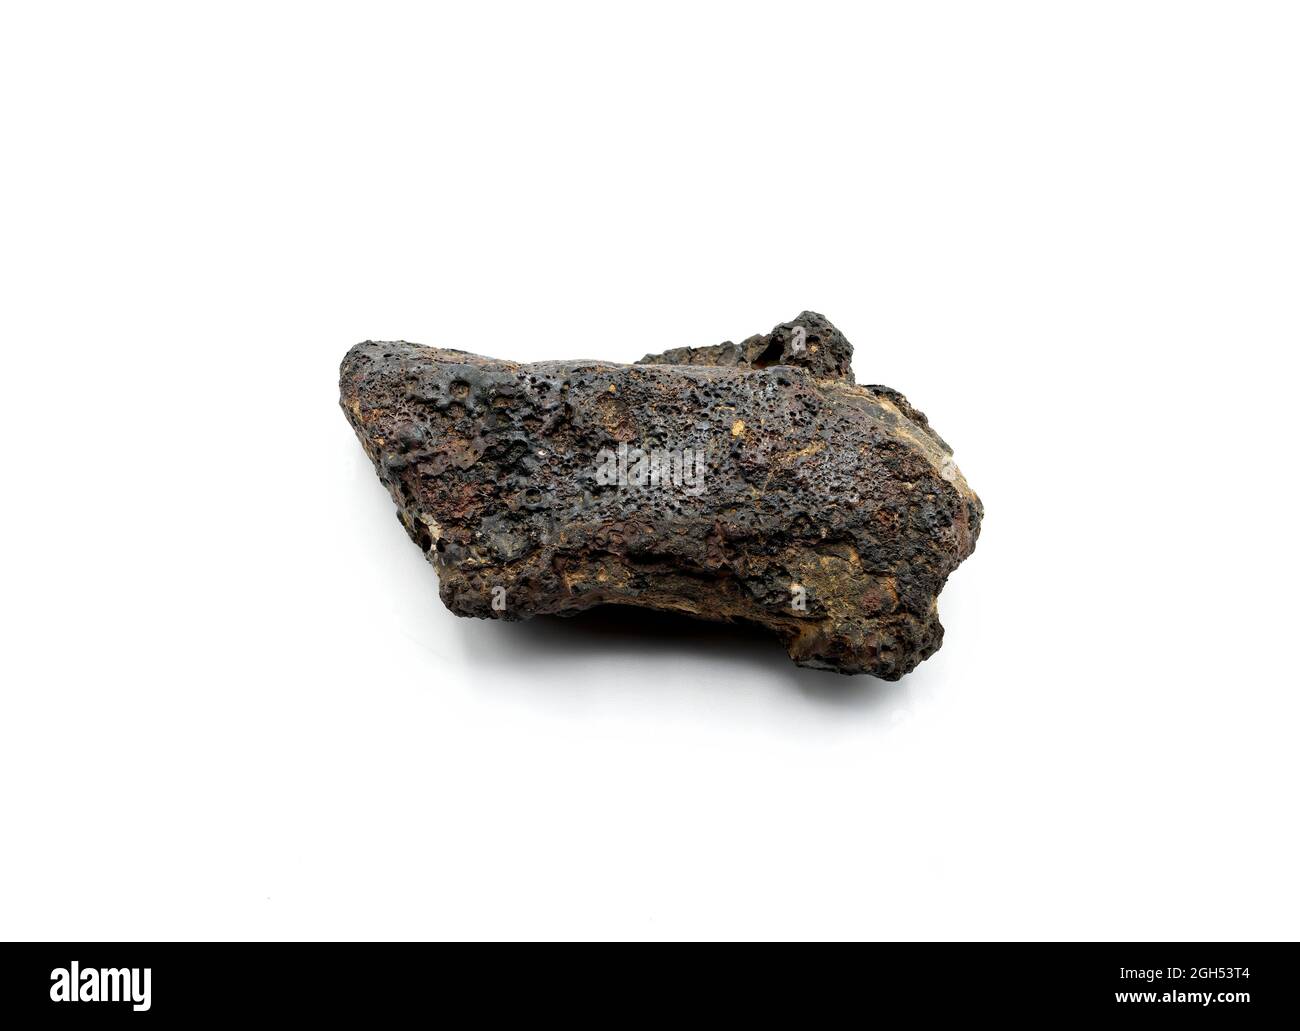 Ein Gestein, das von der Stahlindustrie als Eisenerz verwendet wird. Es wird von einem Magneten angezogen, ferruginöse Masse, eisenreiches Gesteinsmineral, Eisenerze, Hämatit, mag Stockfoto